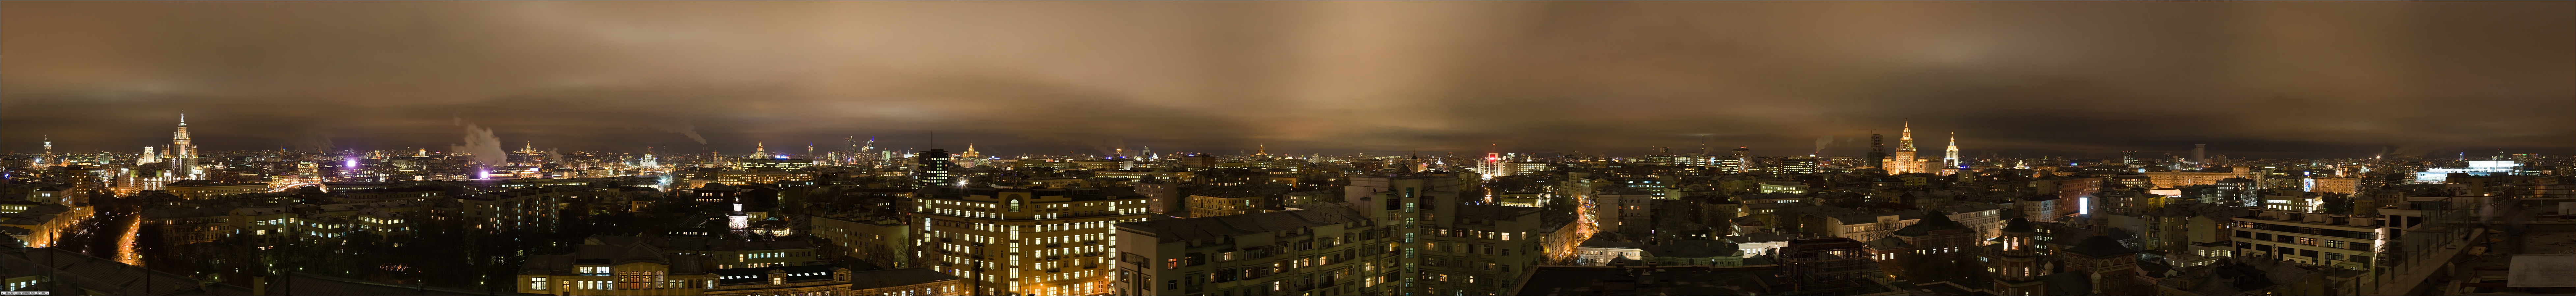 Панорама ночной Москвы из окна